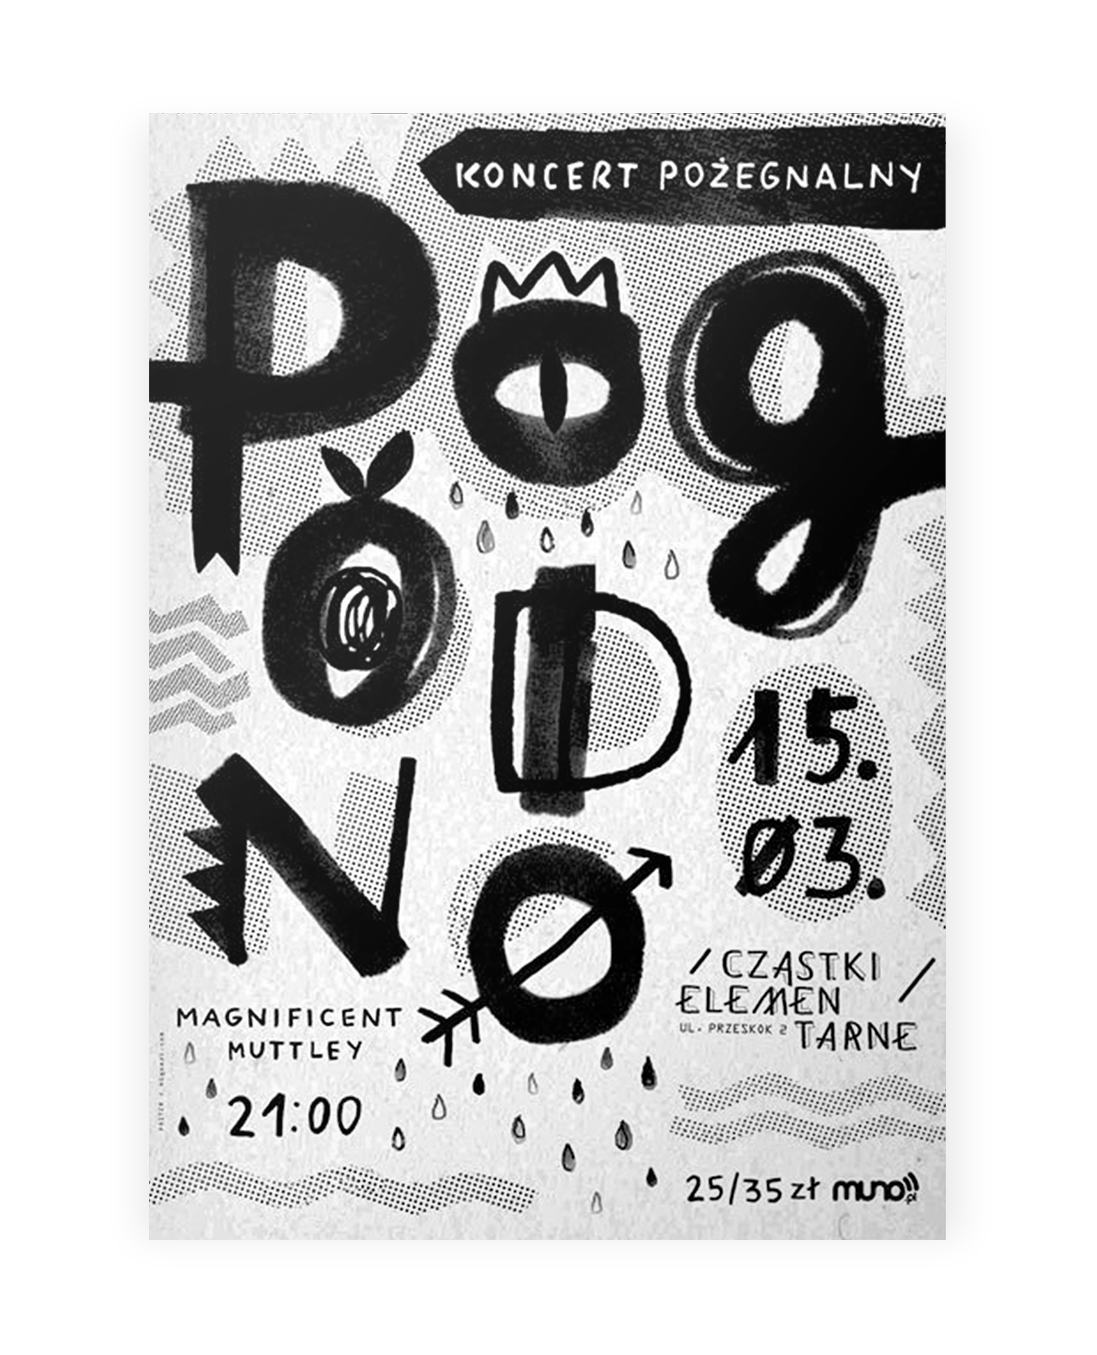 higoszi gosia stolinska  poster wall design club warsaw poland graphic party Event print